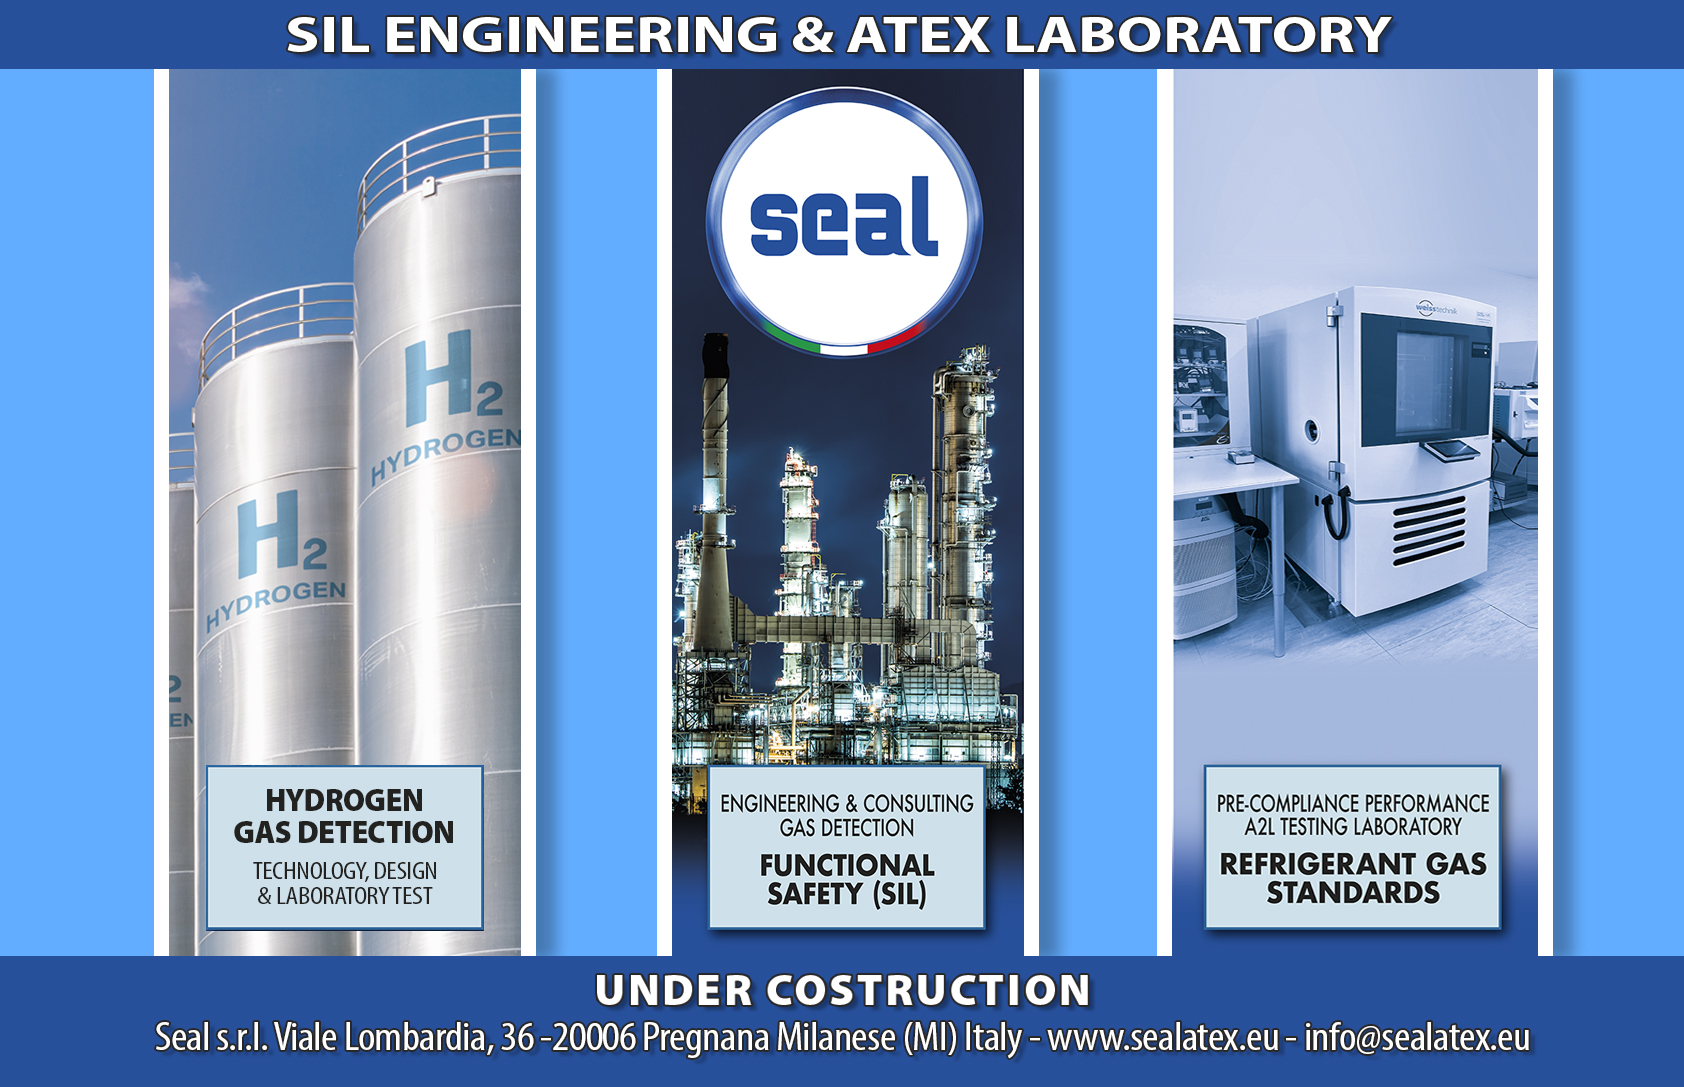 SIL Engineering & ATEX Laboratory